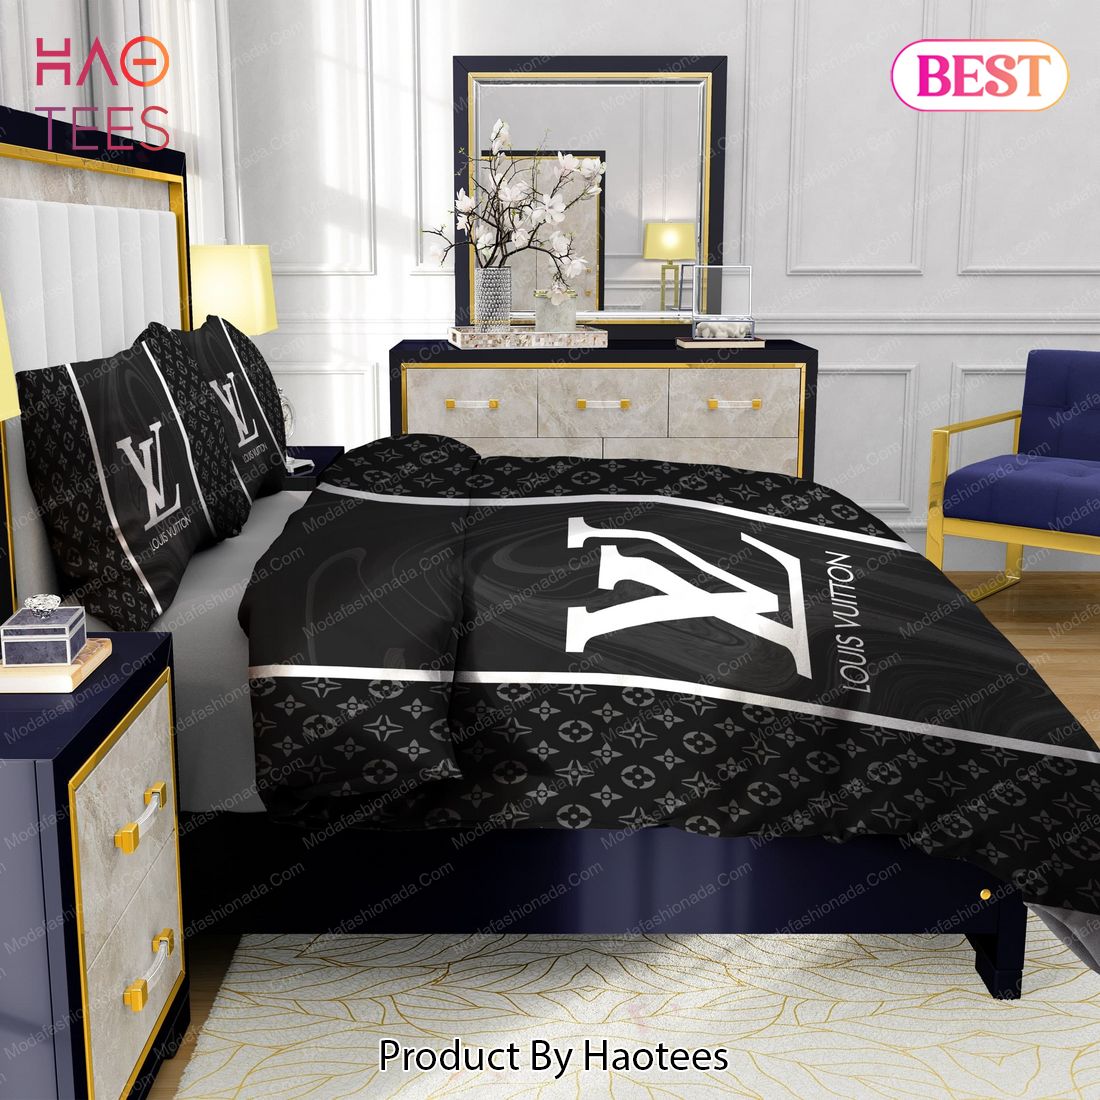 Black Veinstone Louis Vuitton Bedding Sets Bed Sets, Bedroom Sets,  Comforter Sets, Duvet Cover, Bedspread